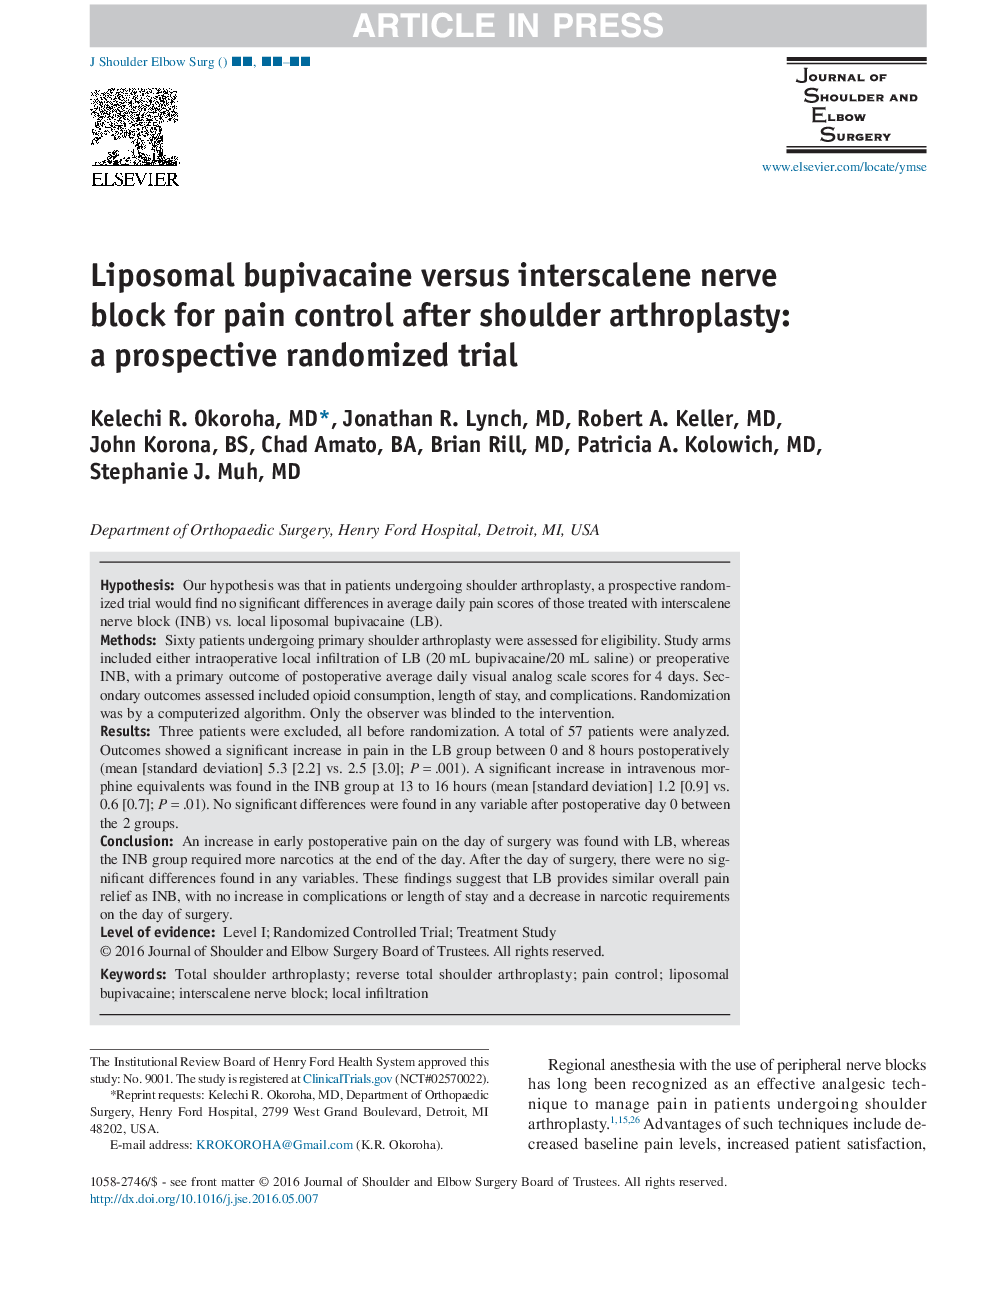 بلوپای لیپوسومال بوپیواکائین در مقابل انتراسکالن برای کنترل درد بعد از آرتروپلاستی شانه: یک آزمایش تصادفی آیندهنگر 